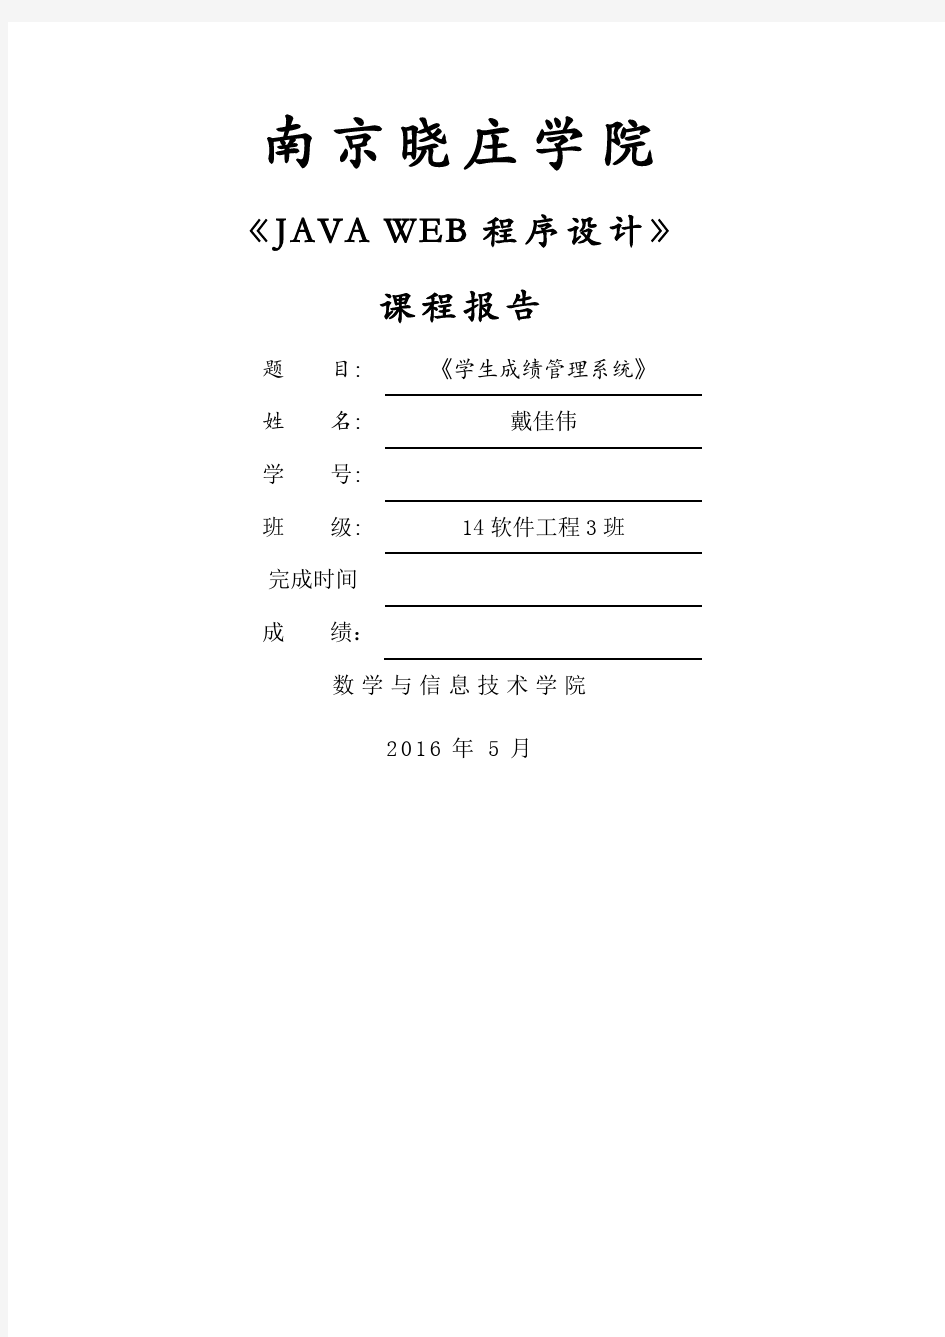 JAVA WEB程序设计报告